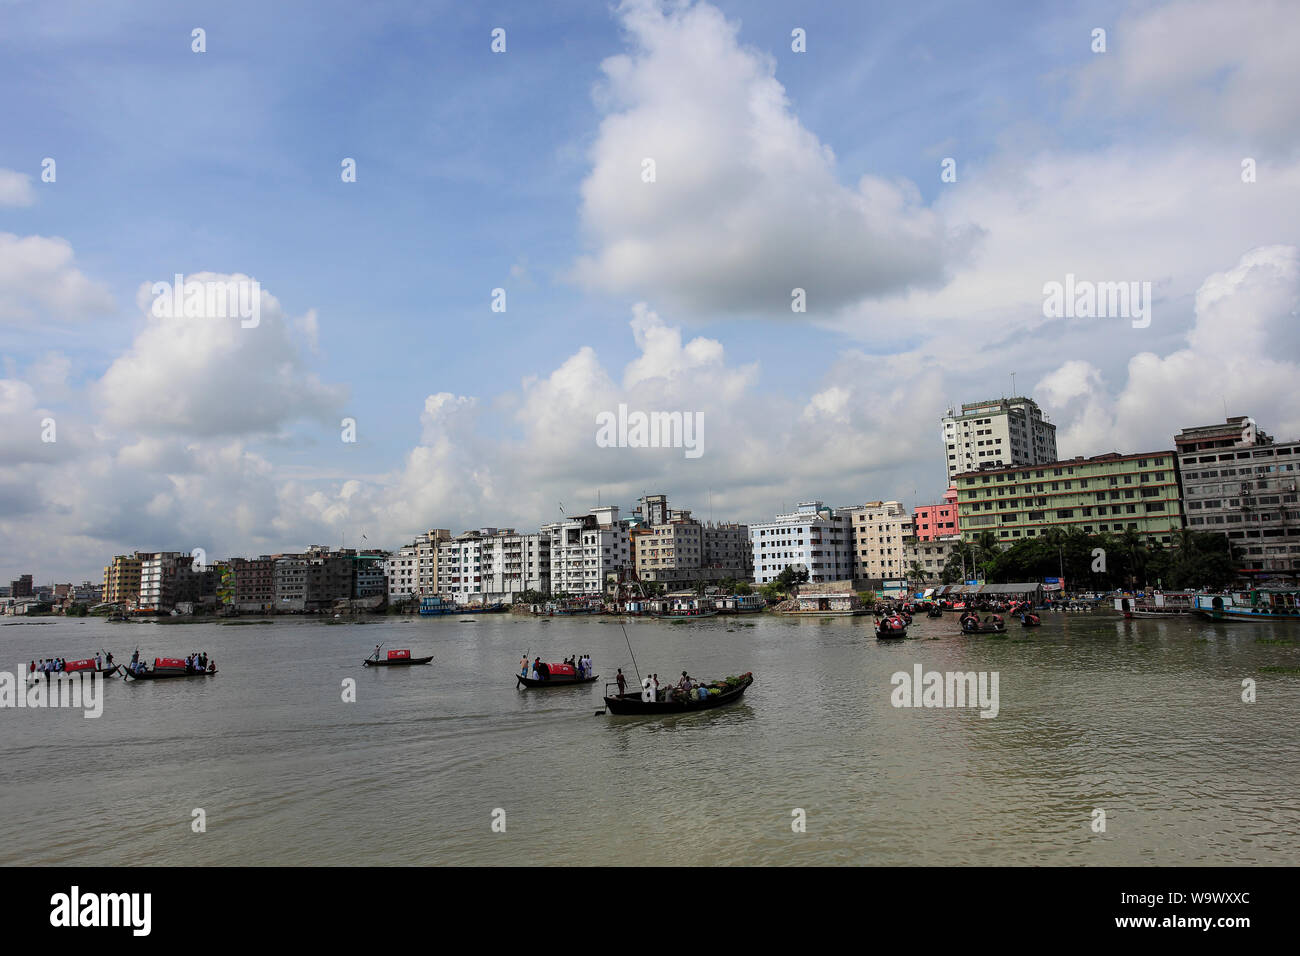 The port city Narayanganj on the bank of the Shitalakshya River. Narayanganj, Bangladesh. Stock Photo